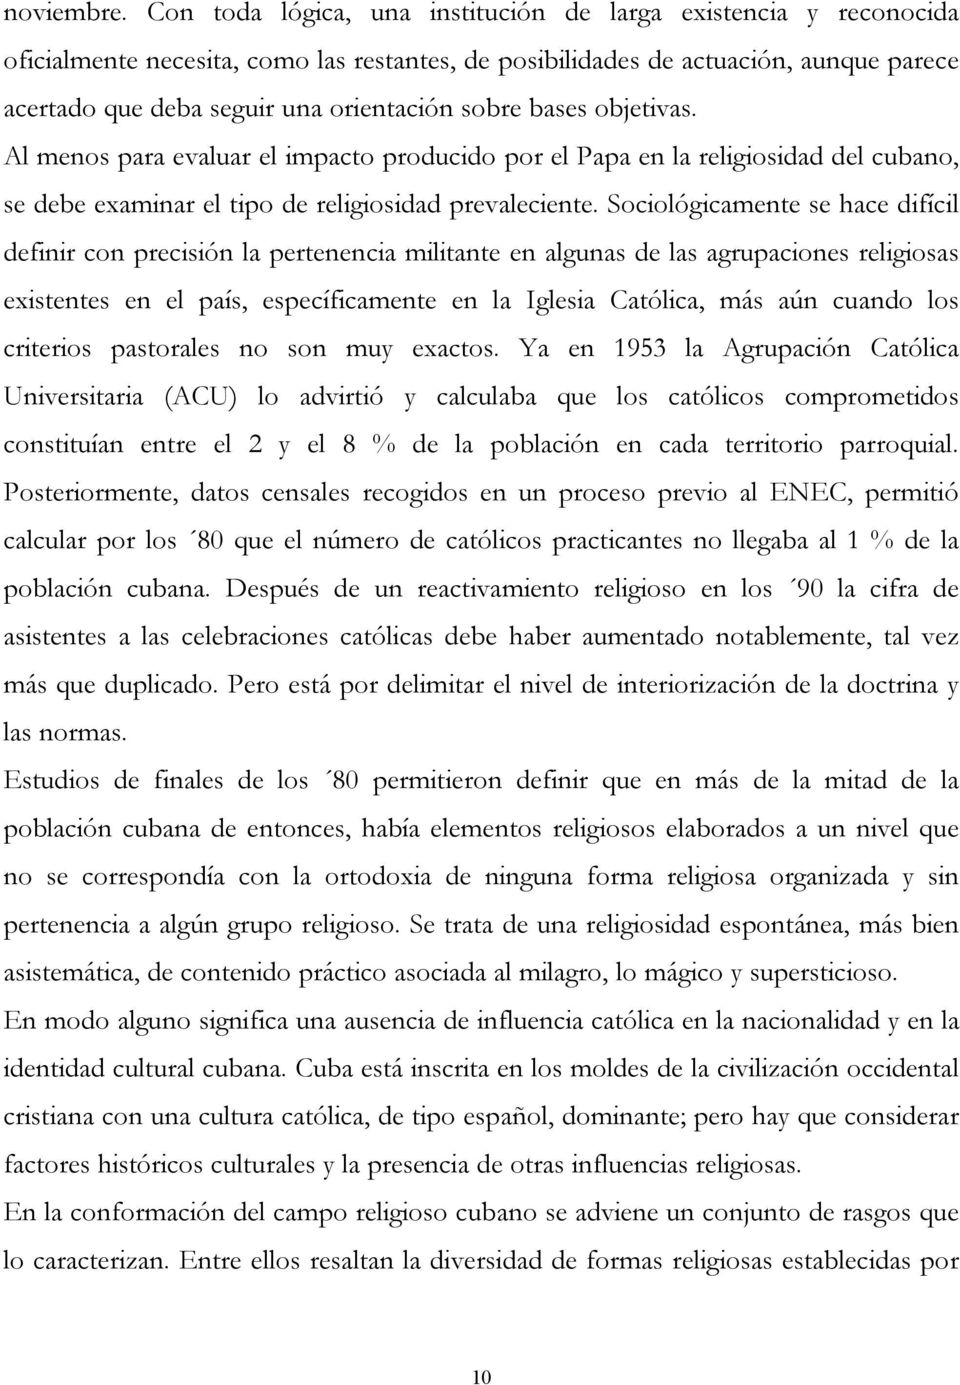 sobre bases objetivas. Al menos para evaluar el impacto producido por el Papa en la religiosidad del cubano, se debe examinar el tipo de religiosidad prevaleciente.